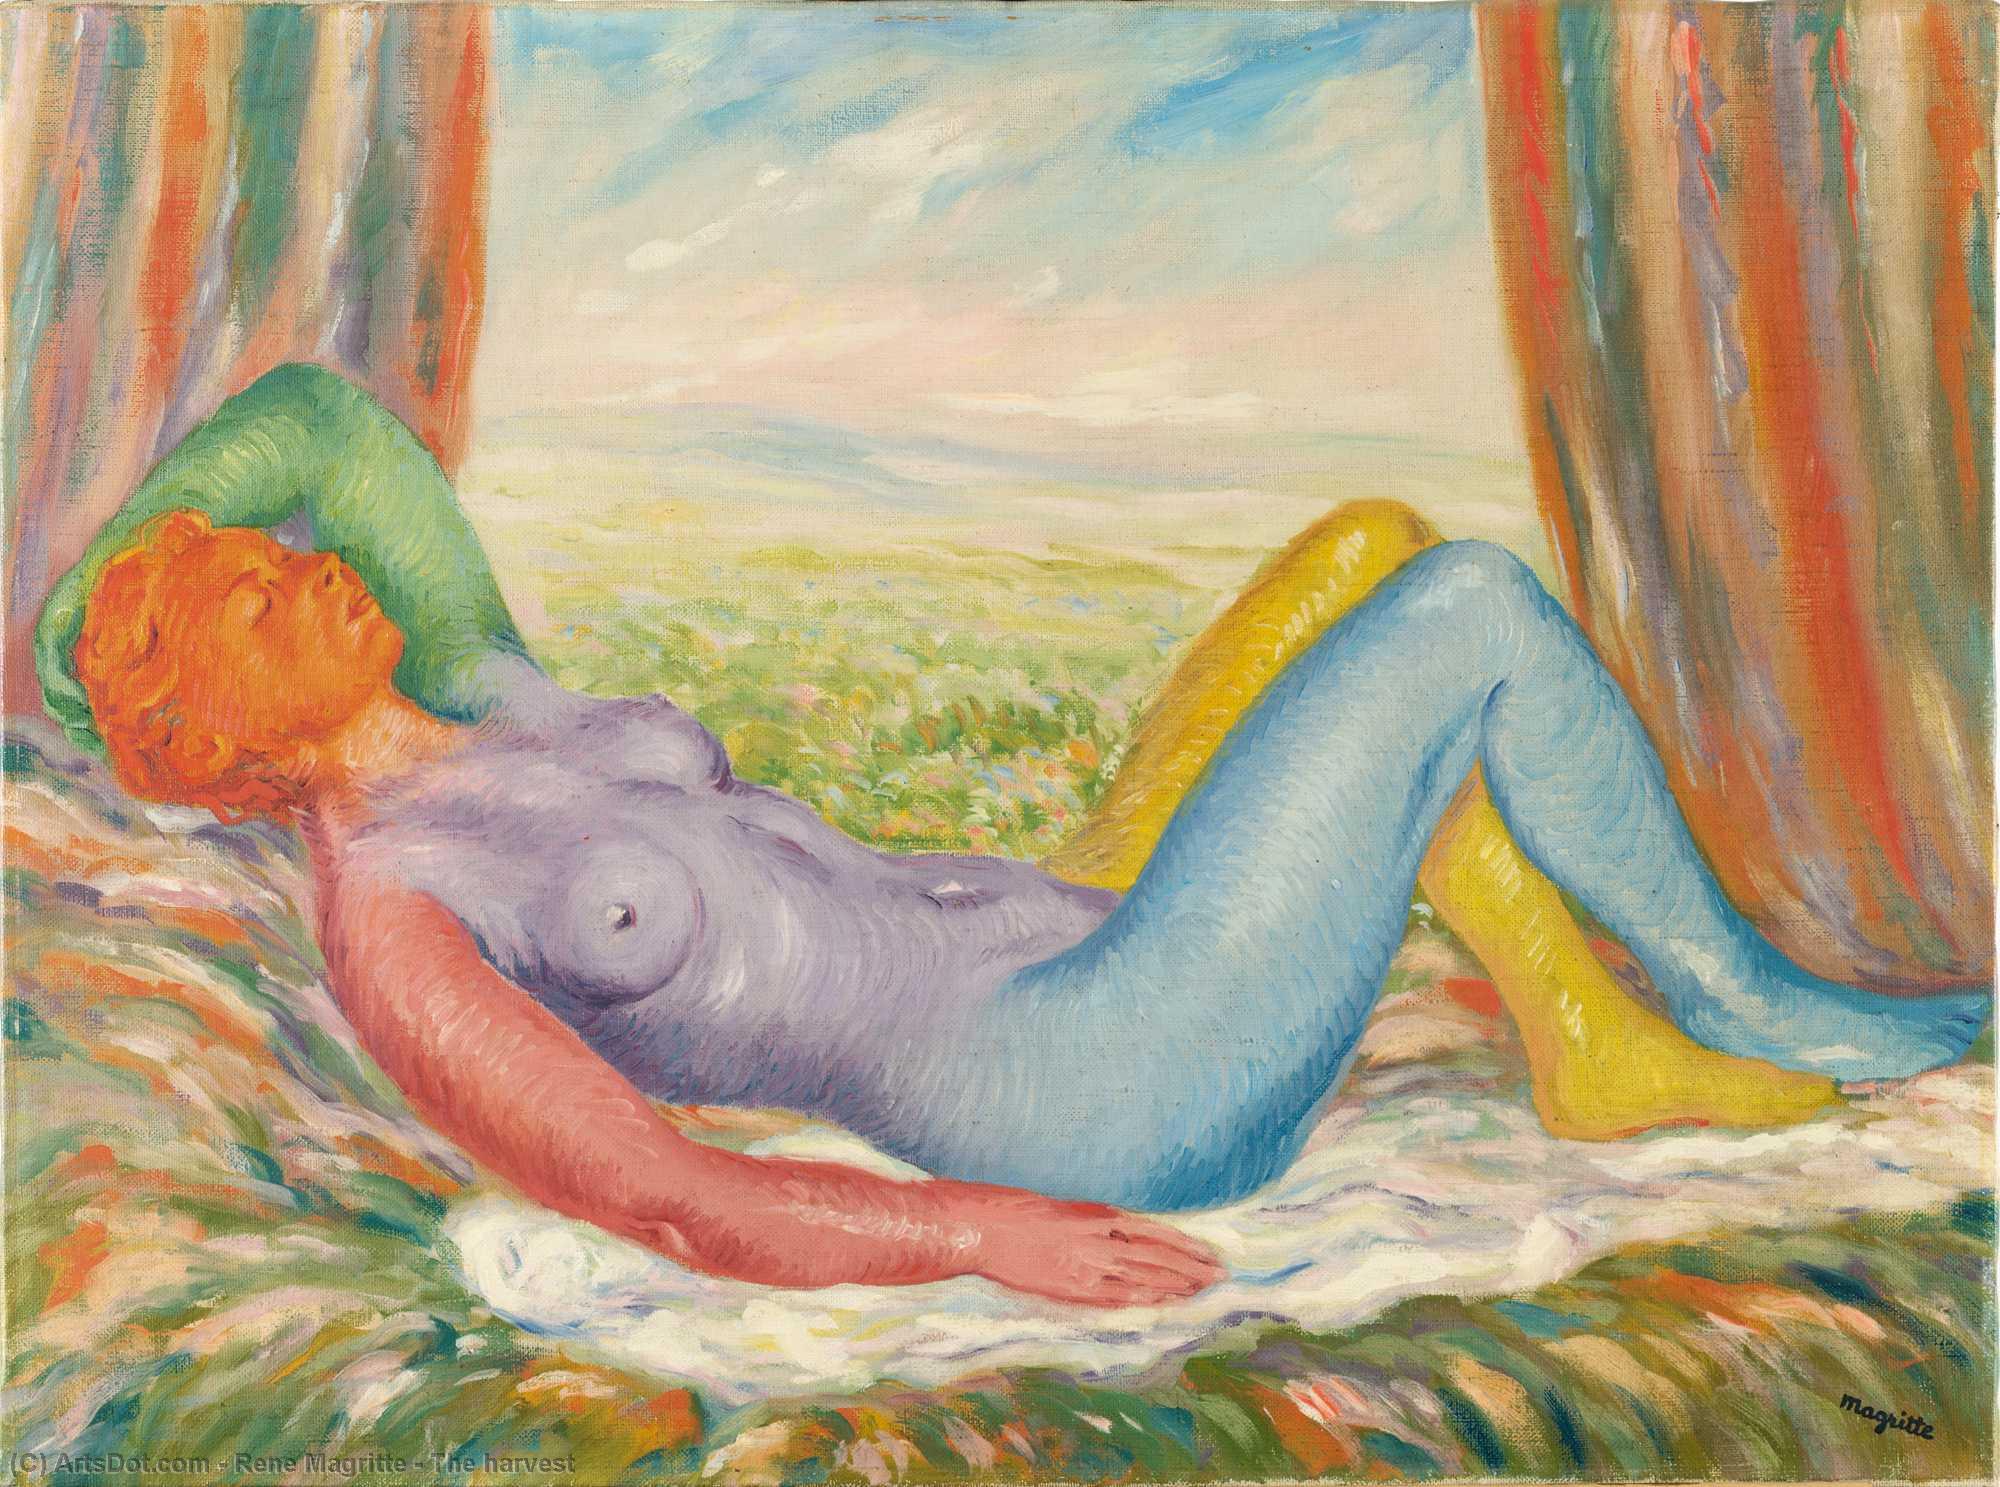 WikiOO.org - אנציקלופדיה לאמנויות יפות - ציור, יצירות אמנות Rene Magritte - The harvest